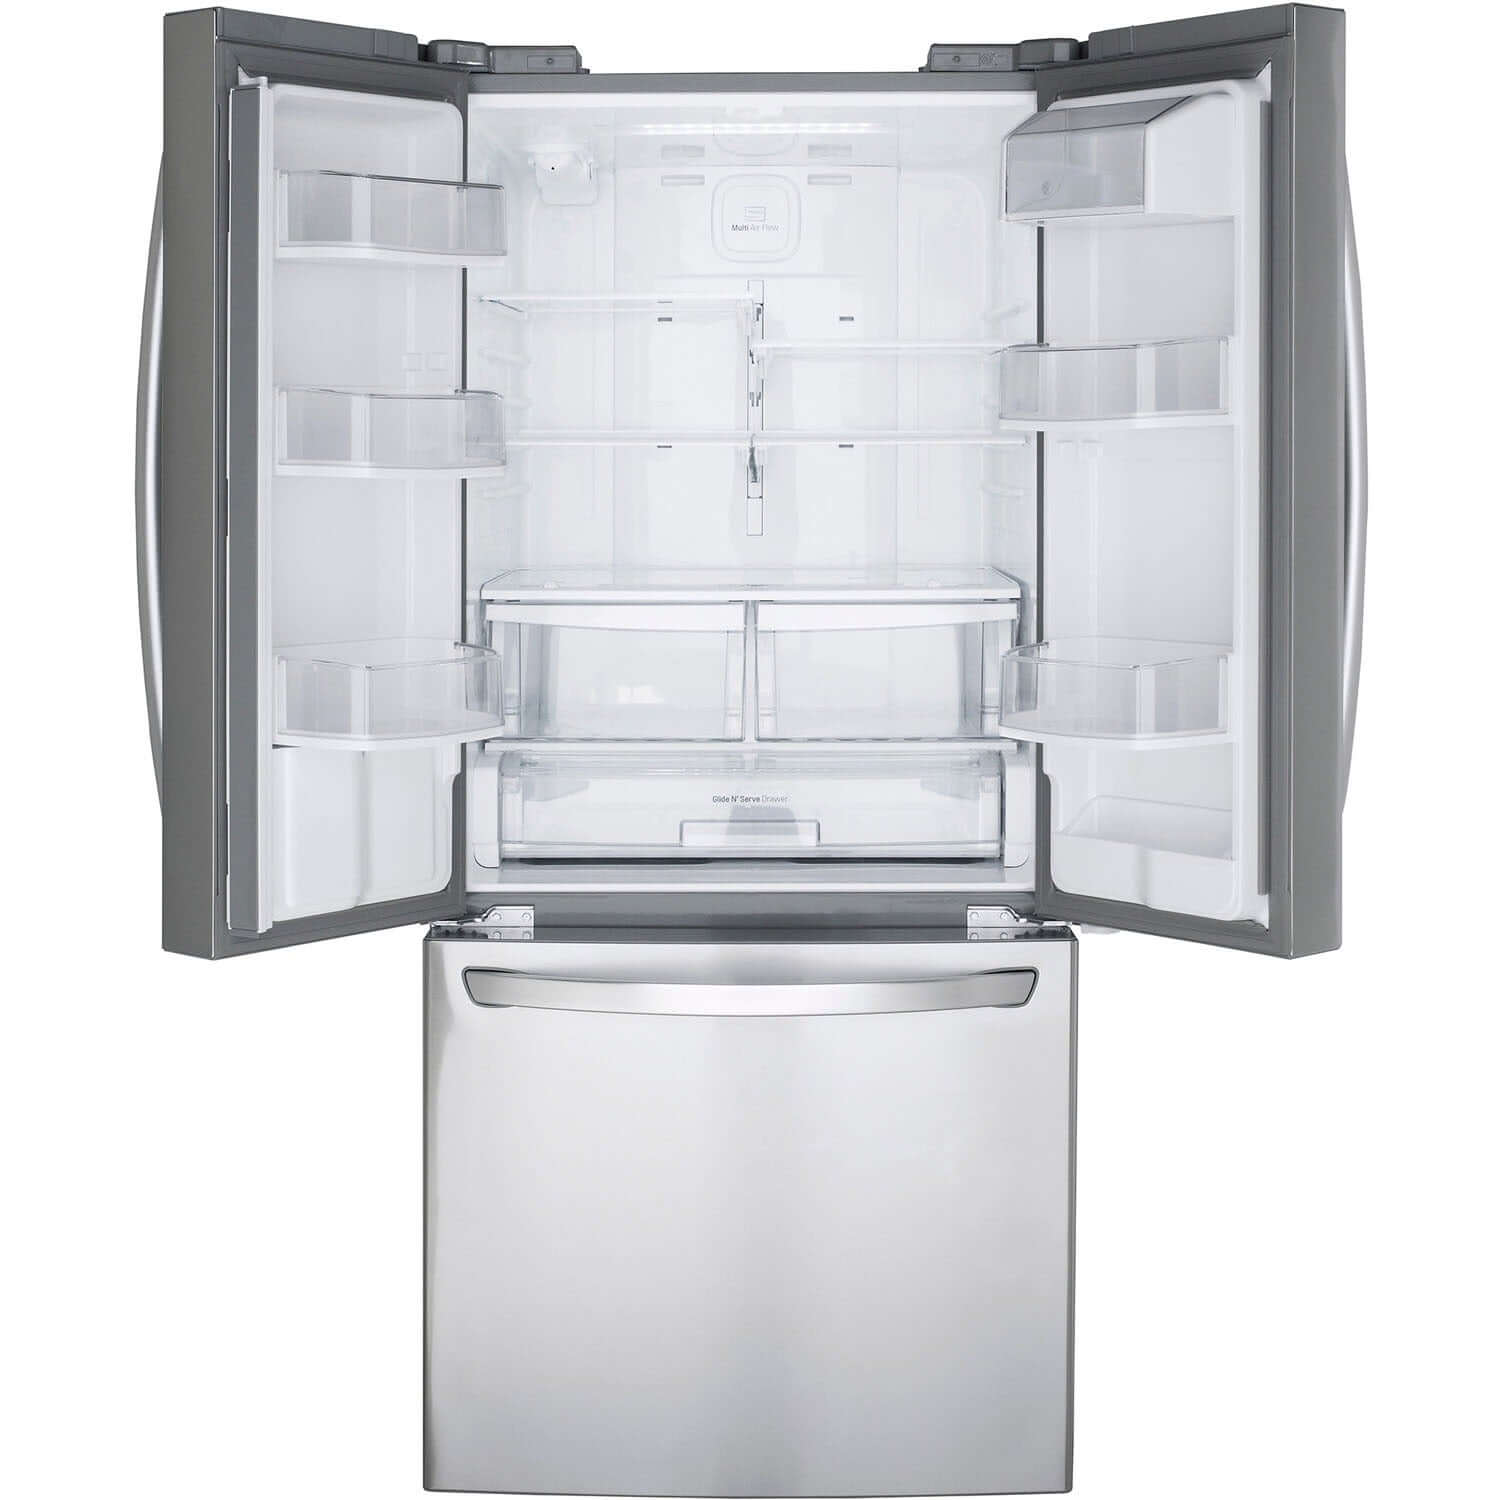 LG 30 Inch 3-Door French Door Refrigerator in Stainless Steel 22 Cu. Ft. (LFDS22520S)